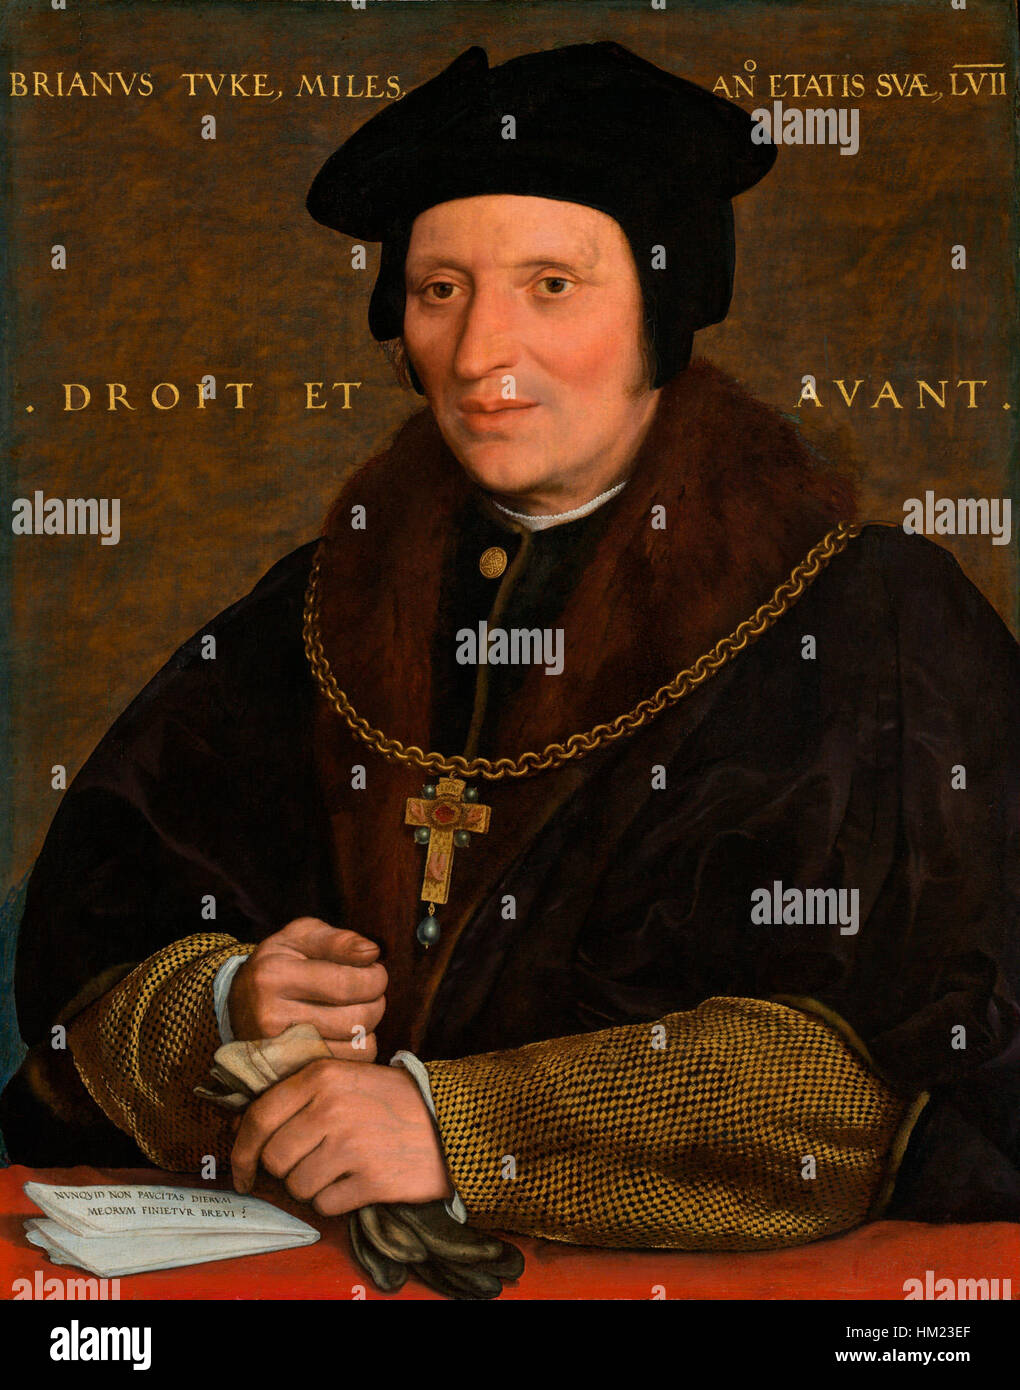 Holbein, Hans - Sir Brian Tuke Stock Photo